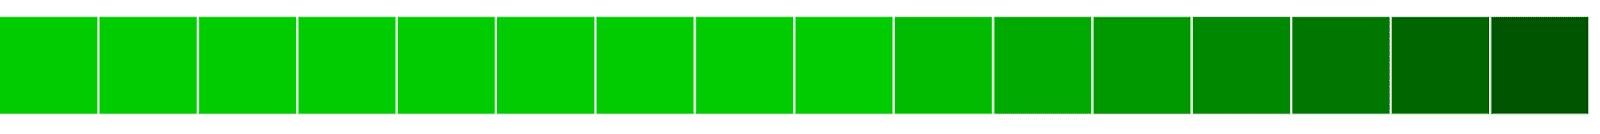 Alinhamento horizontal de blocos verdes, do claro ao escuro.